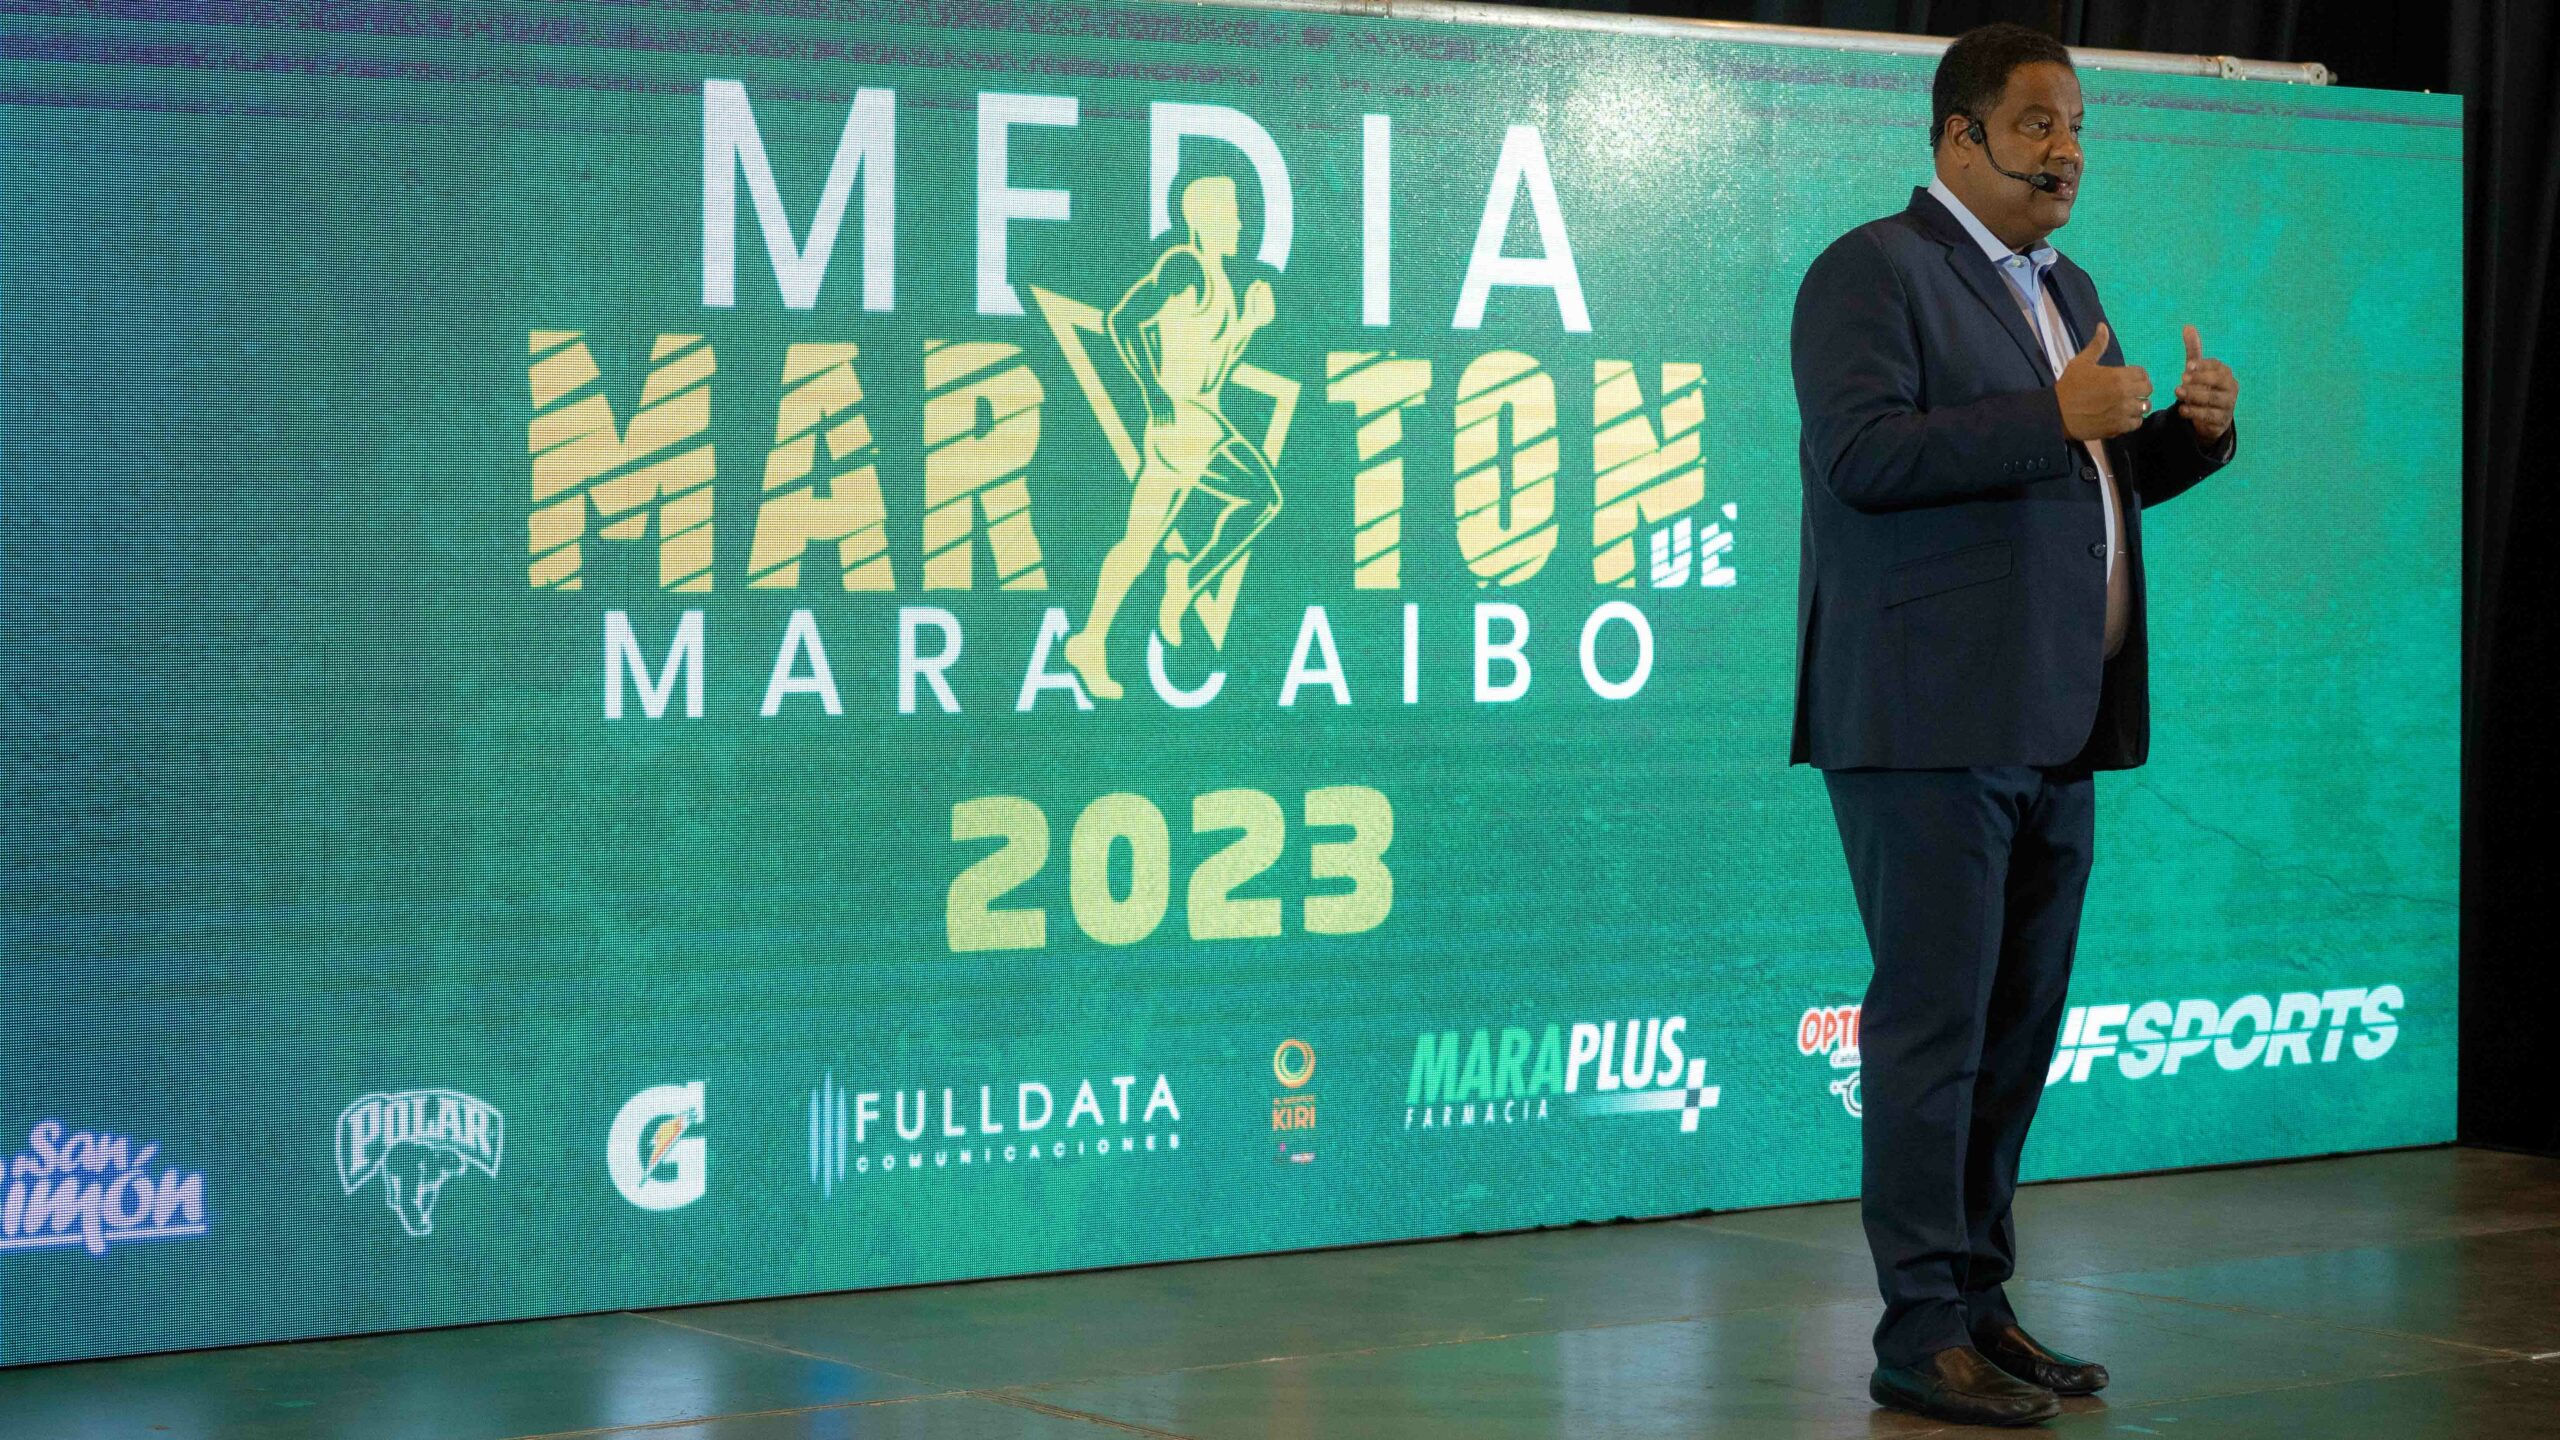 Alcalde Rafael Ramírez Colina sostuvo un encuentro con atletas participantes de la Media Maratón Maracaibo 2023